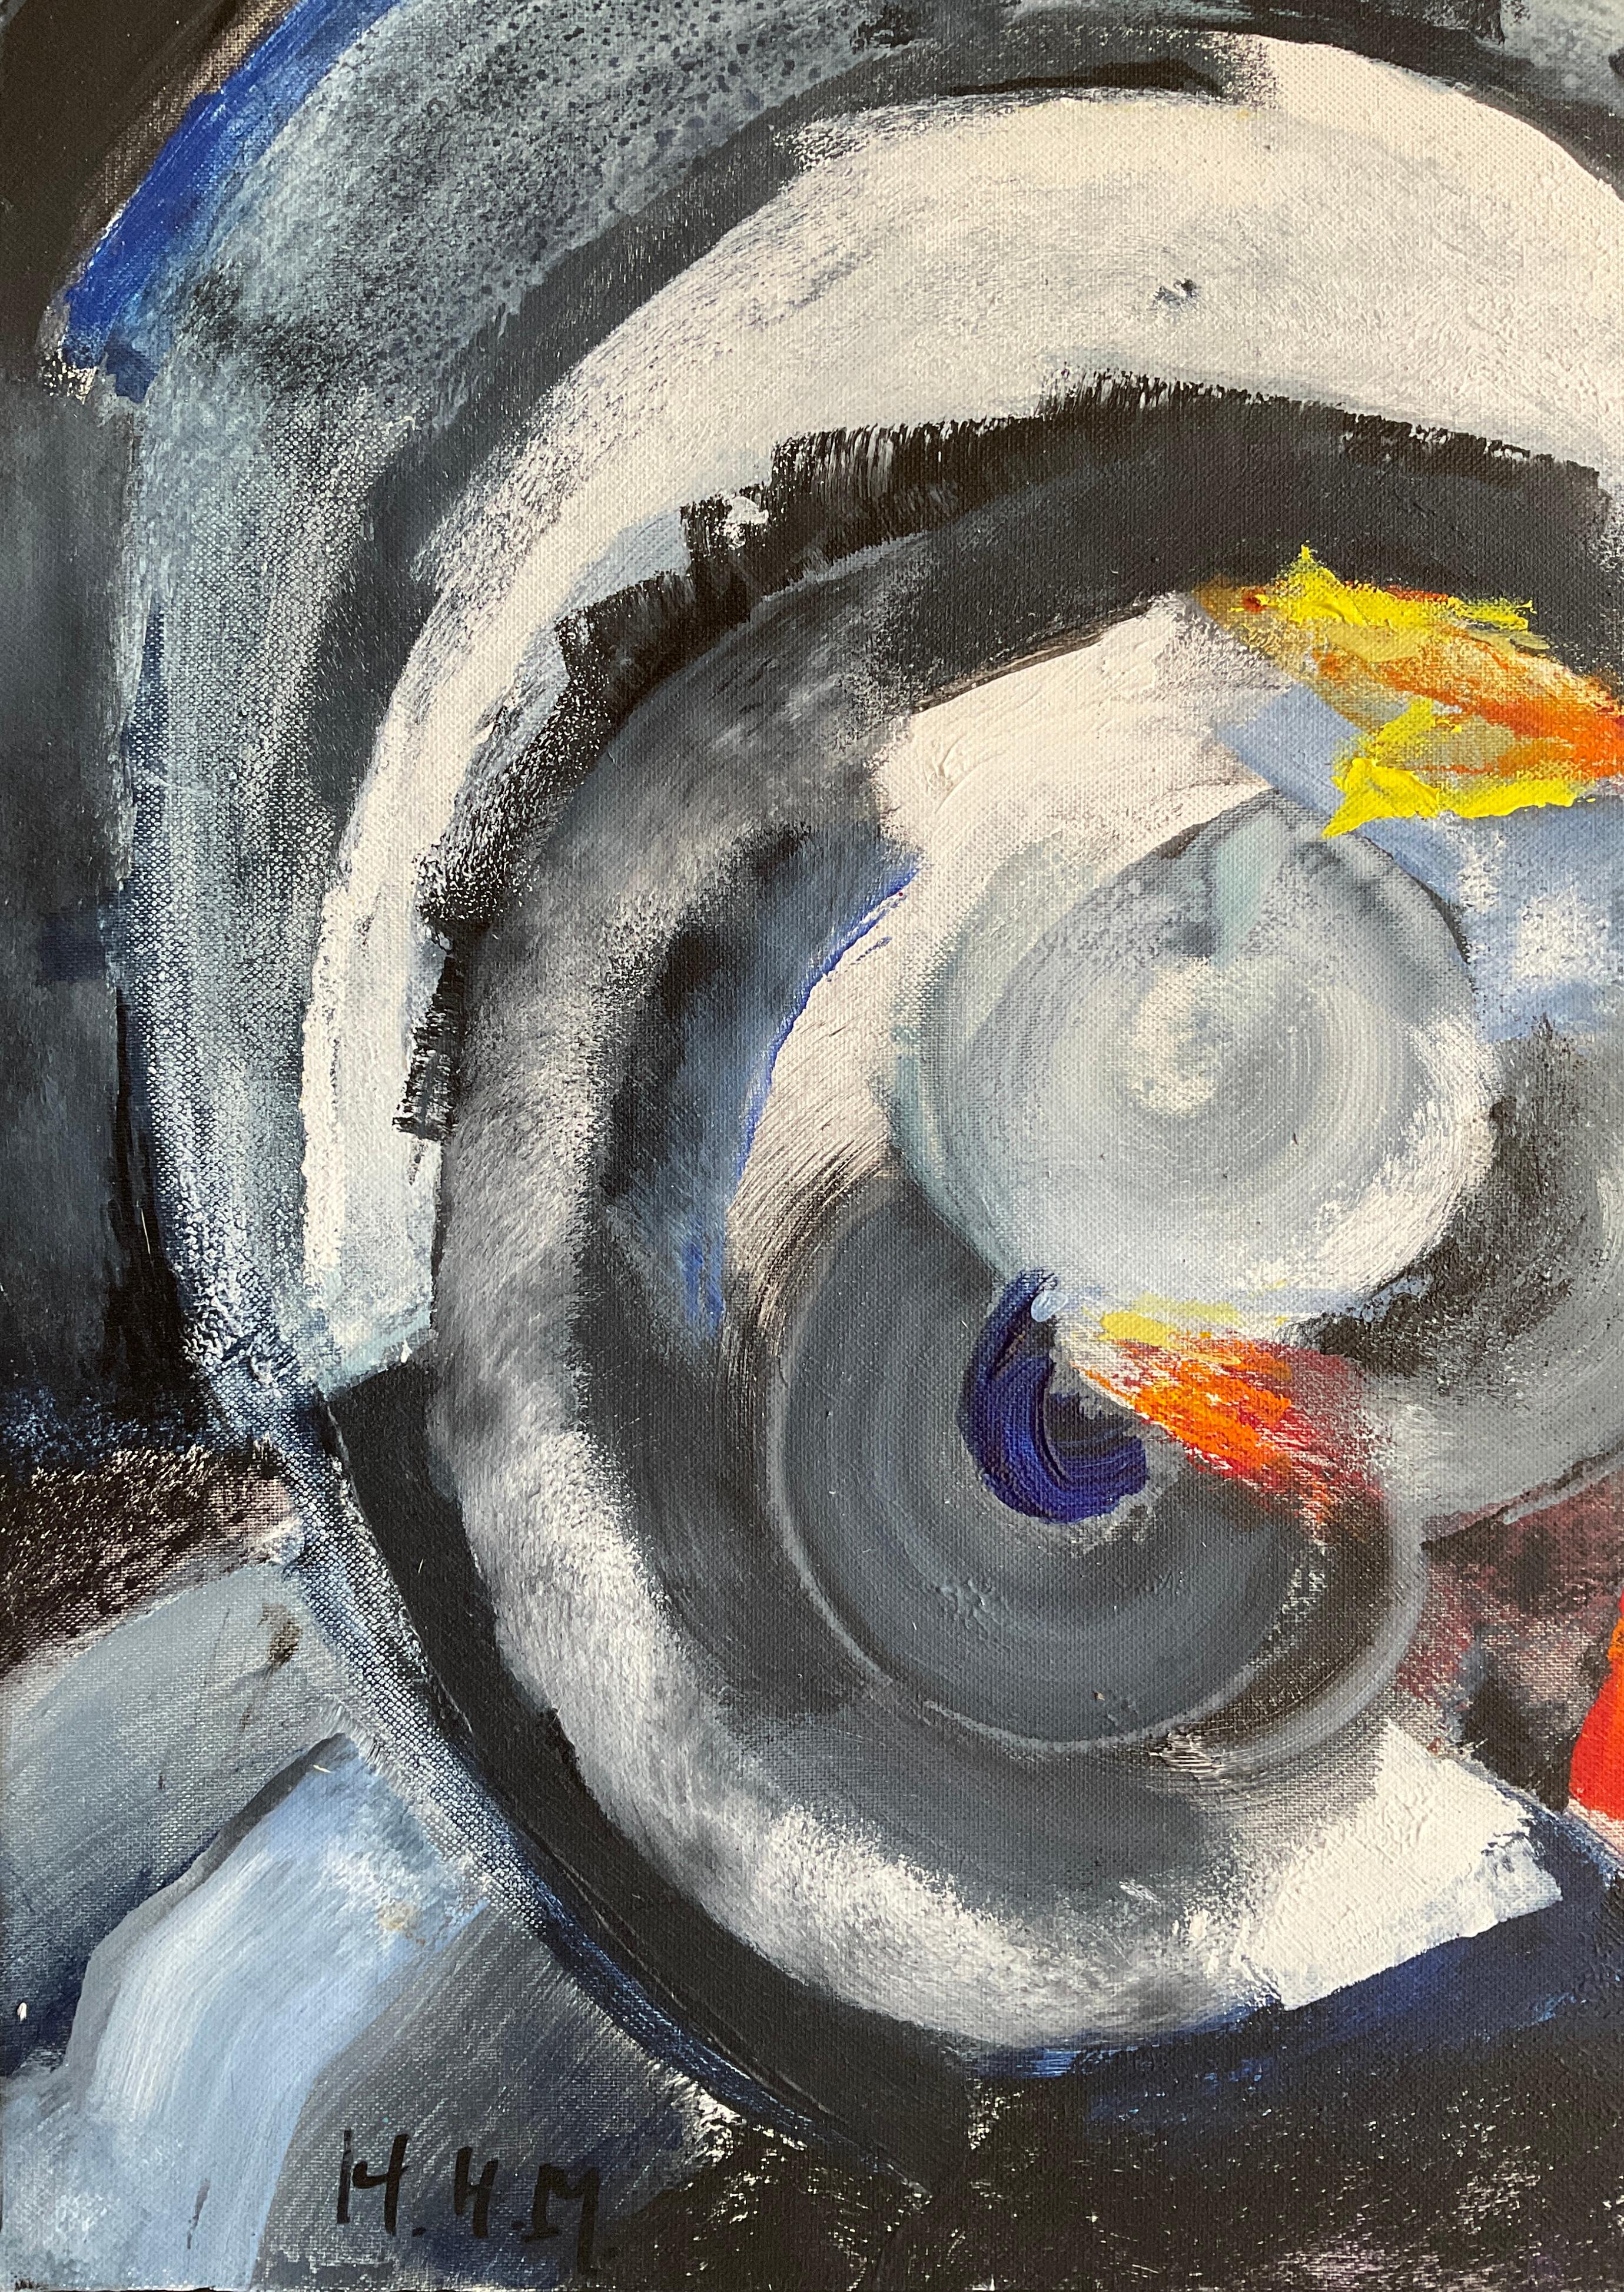 Cette captivante peinture à l'huile abstraite de Heidi Melano évoque le style vibrant de Sonia Delaunay.  Créée lors de la célèbre collaboration de Melano avec des géants de l'art tels que Fernand Léger, Chagall et Braque sur des mosaïques